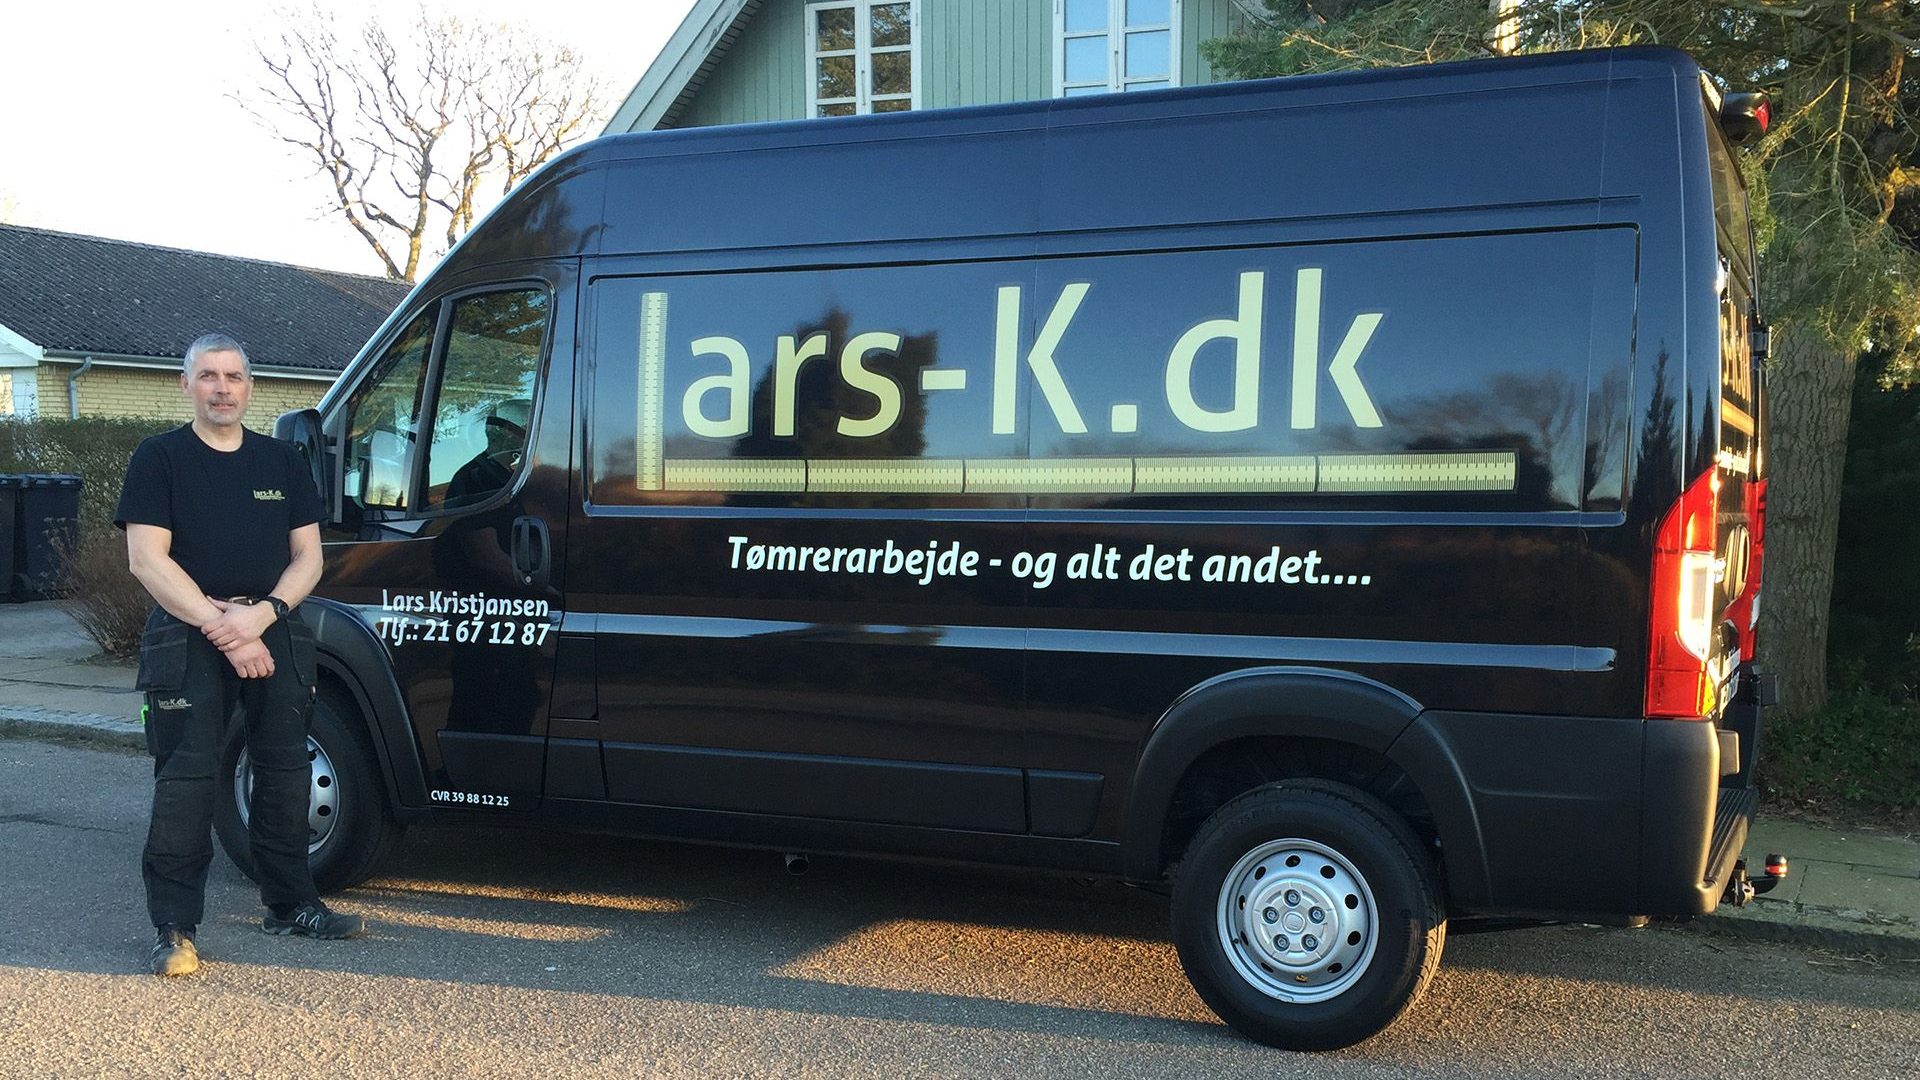 Lars-K.dk